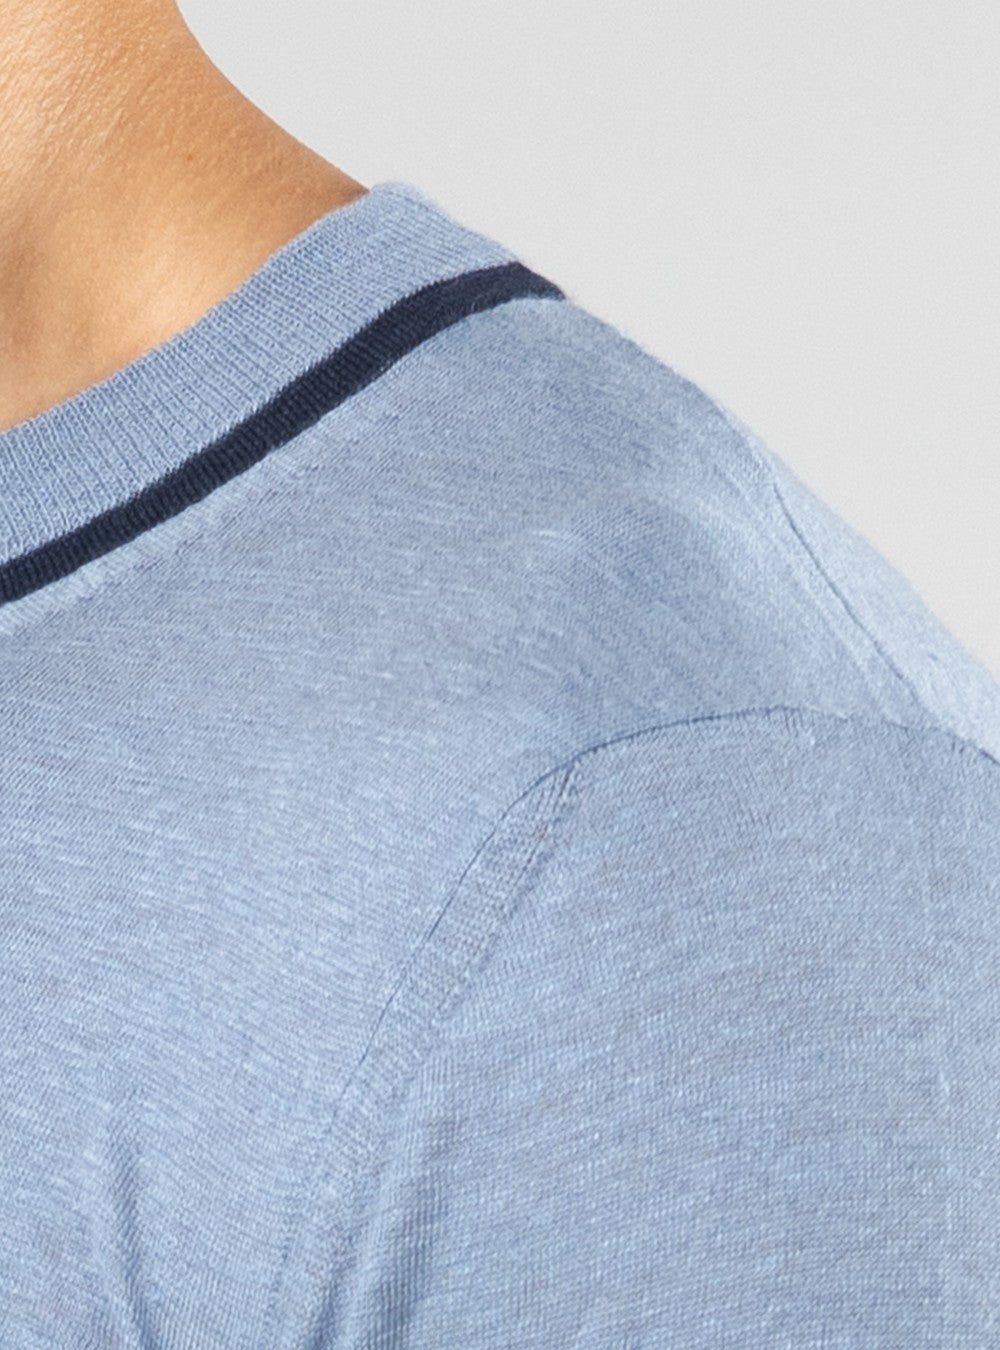 Proteus Lightweight T-Shirt in Cashmere/Linen/Silk, Airforce Blue